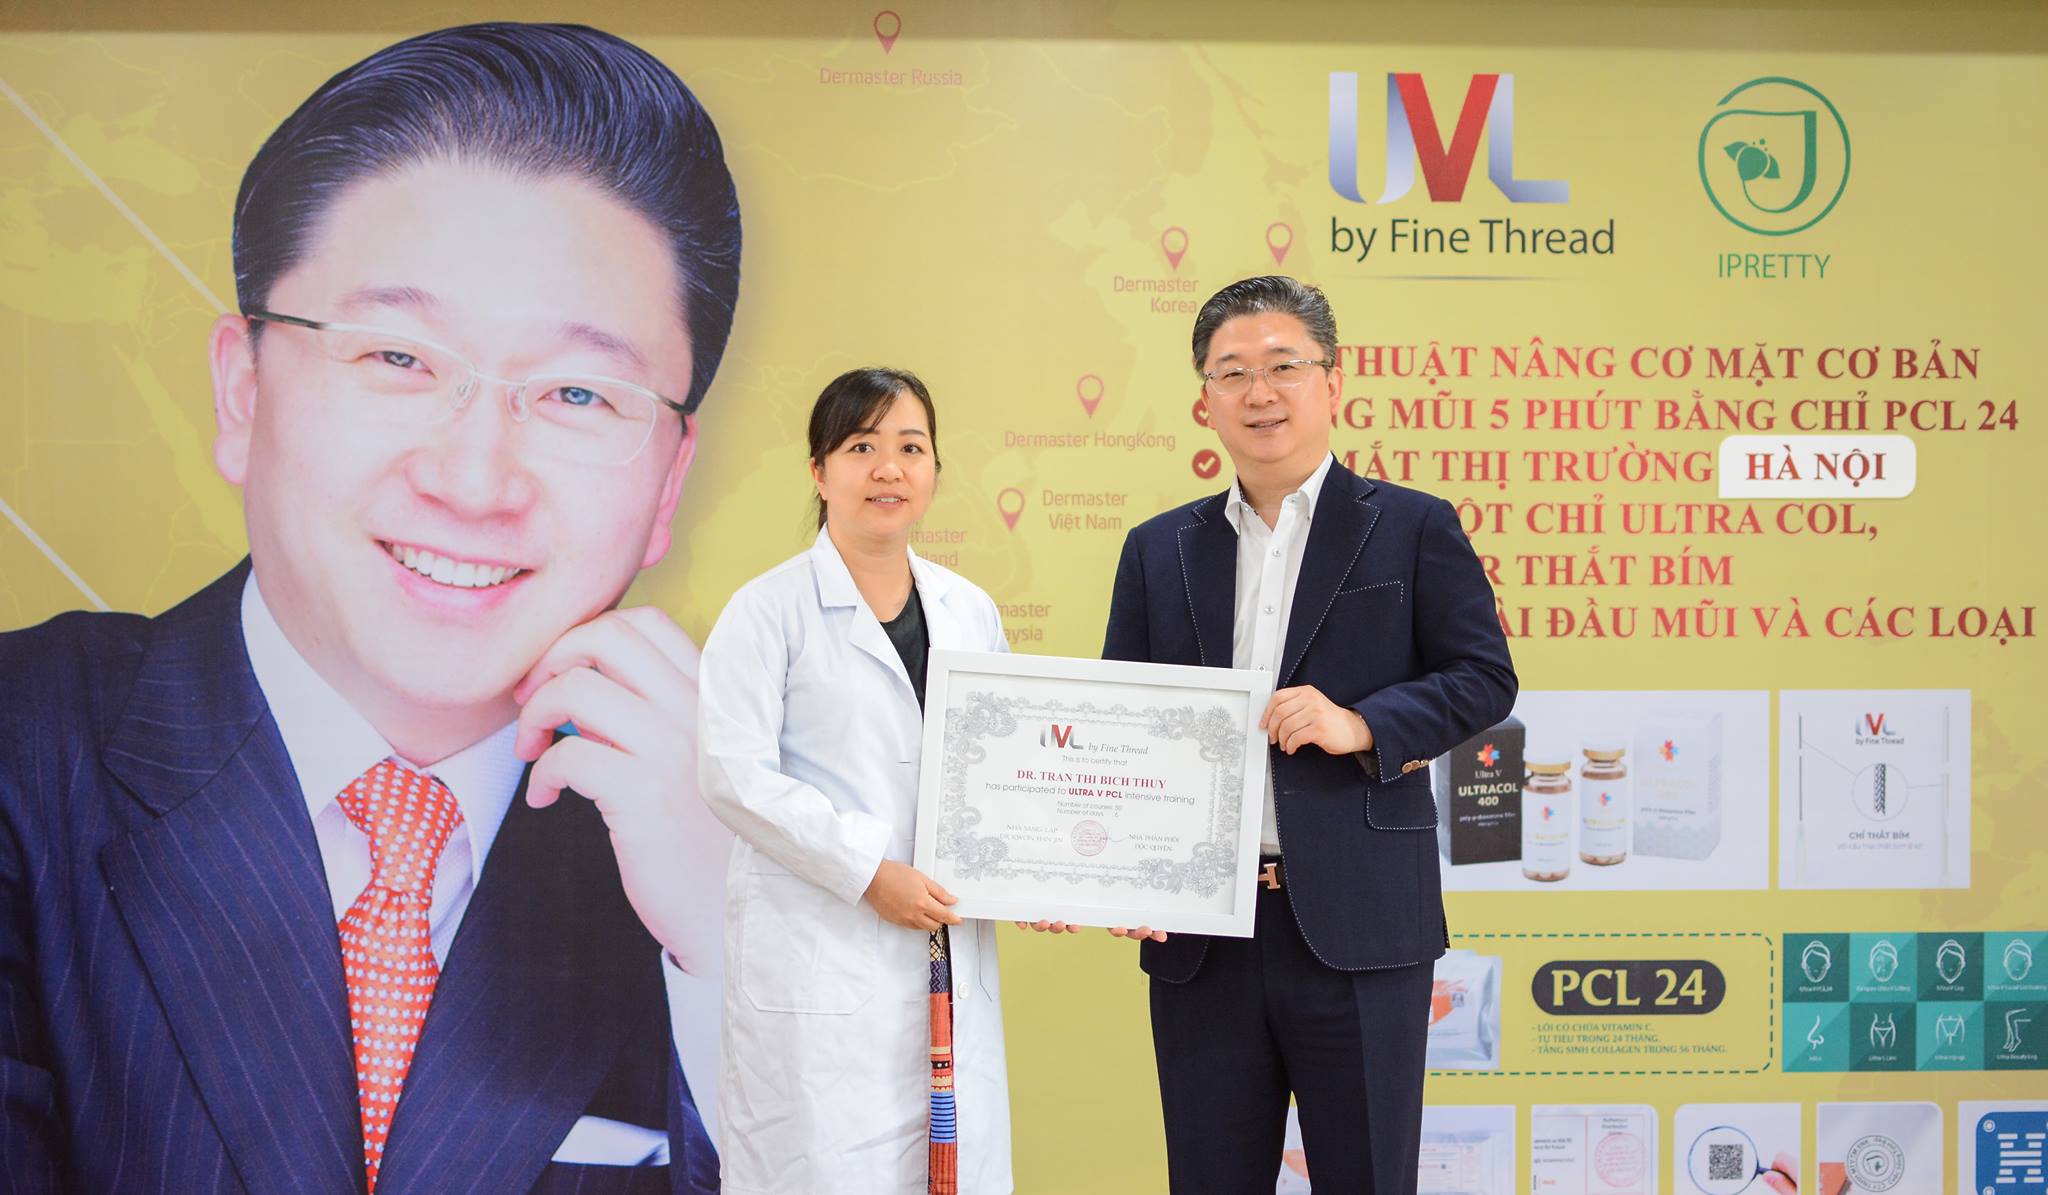 Giáo sư Kwon Han Jin trao chứng chỉ ifaas tại việt nam